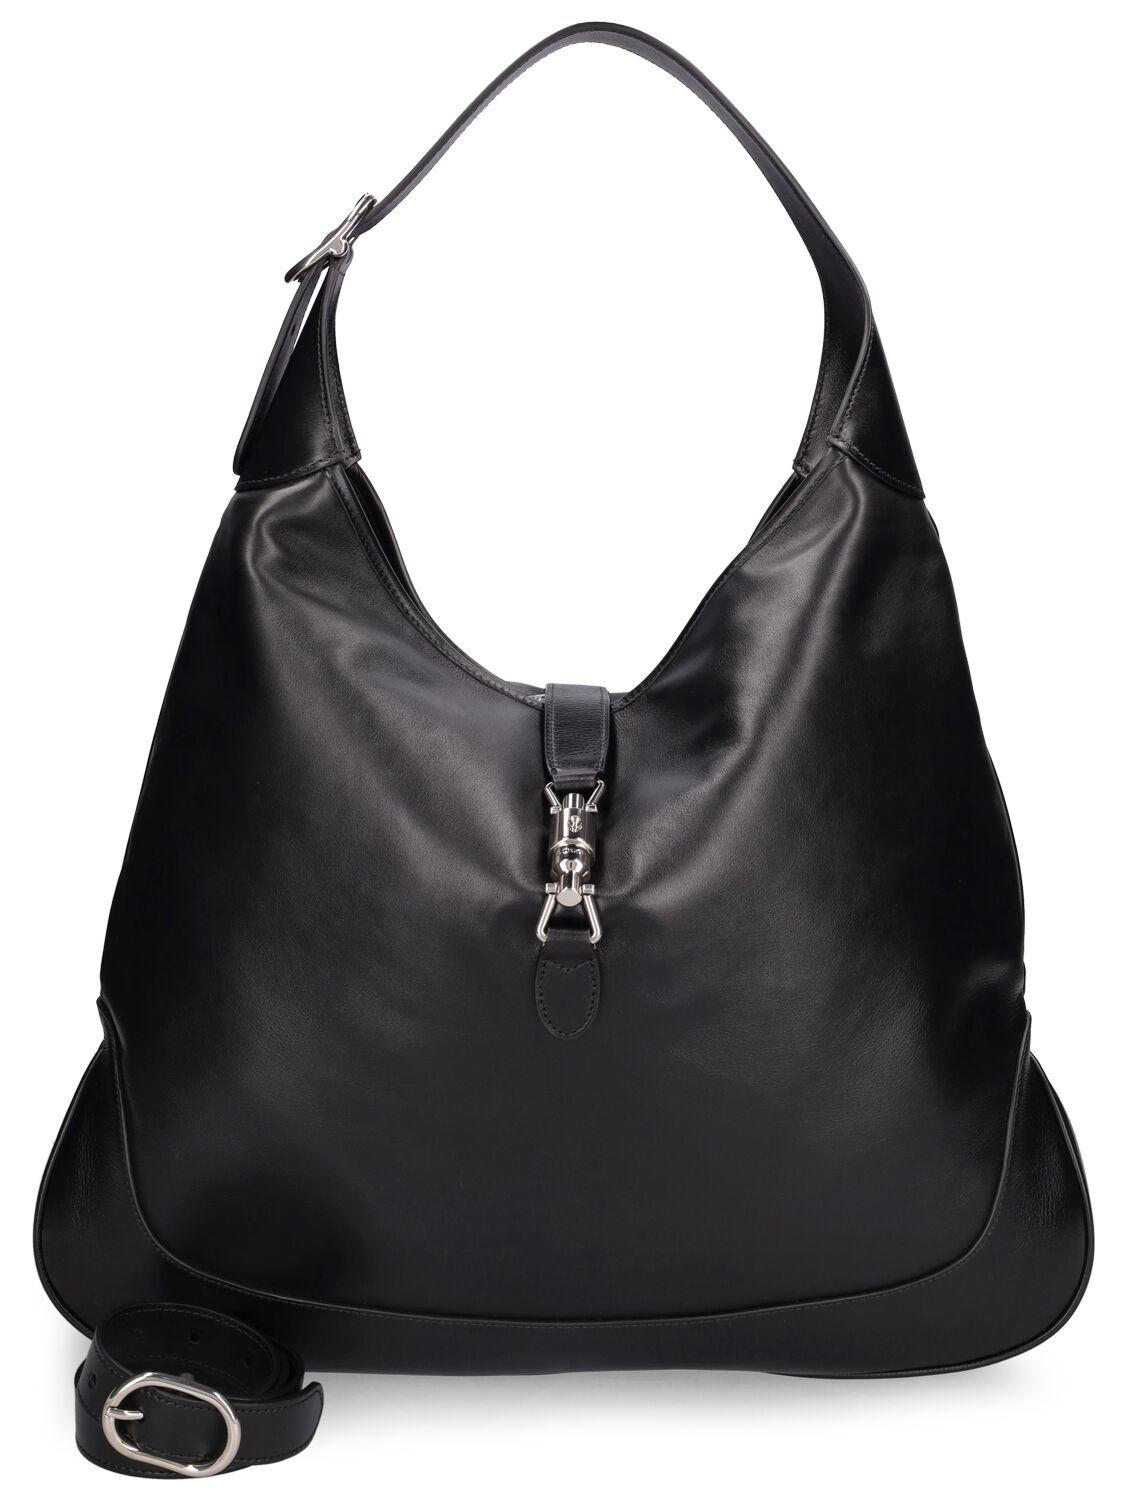 Jackie 1961 Medium Leather Shoulder Bag in Black - Gucci